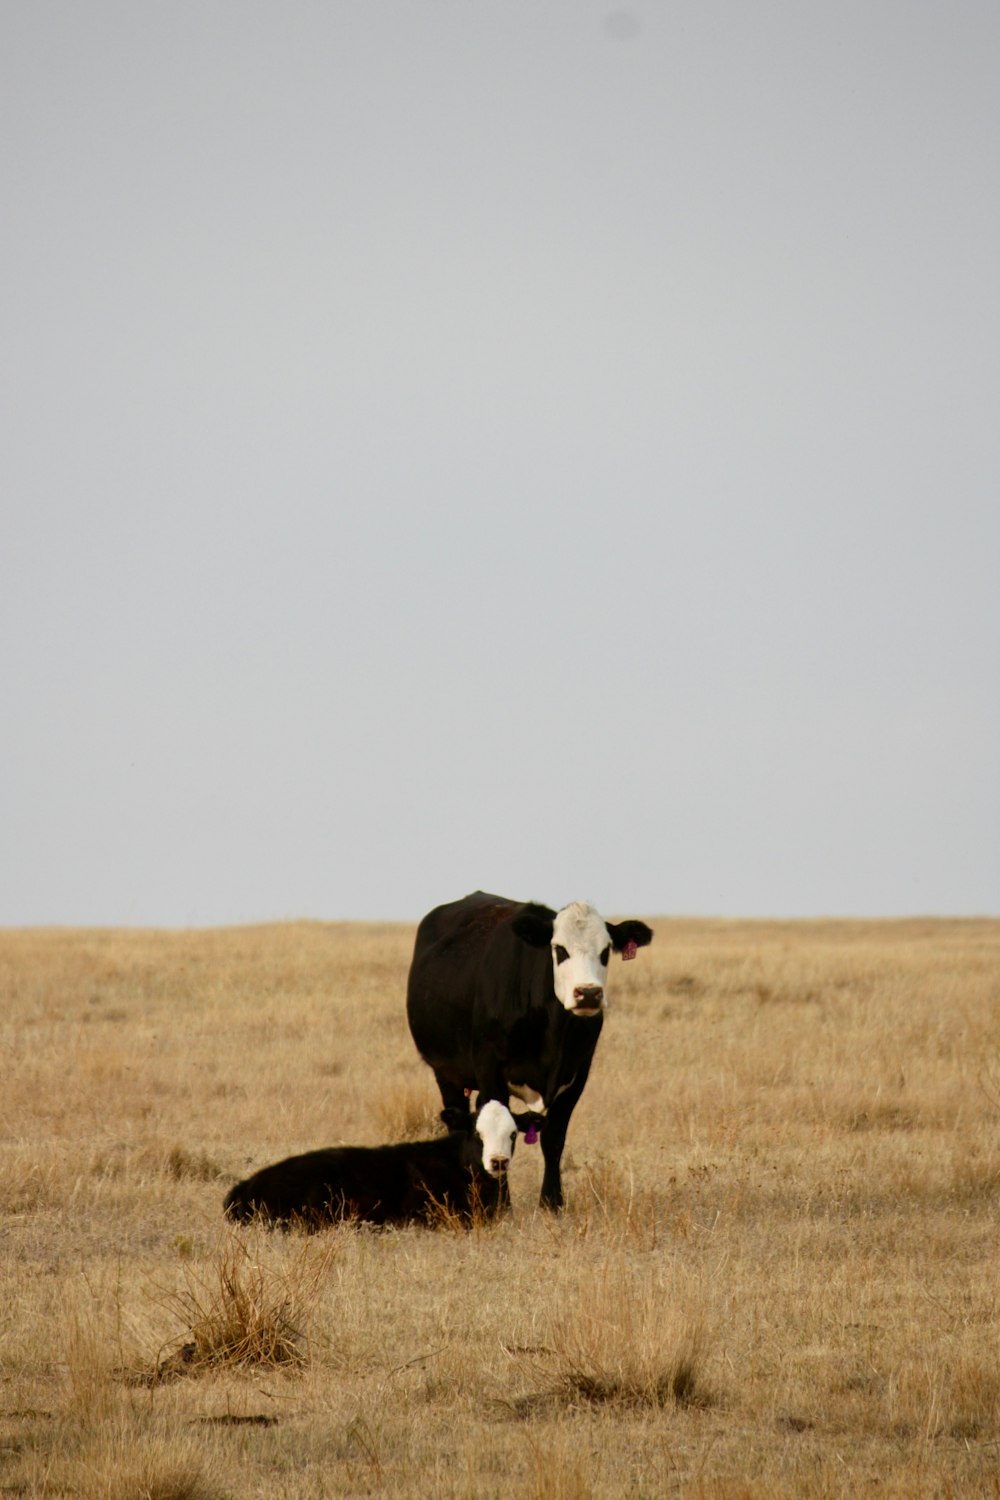 mucca bianca e nera sul campo di erba marrone durante il giorno